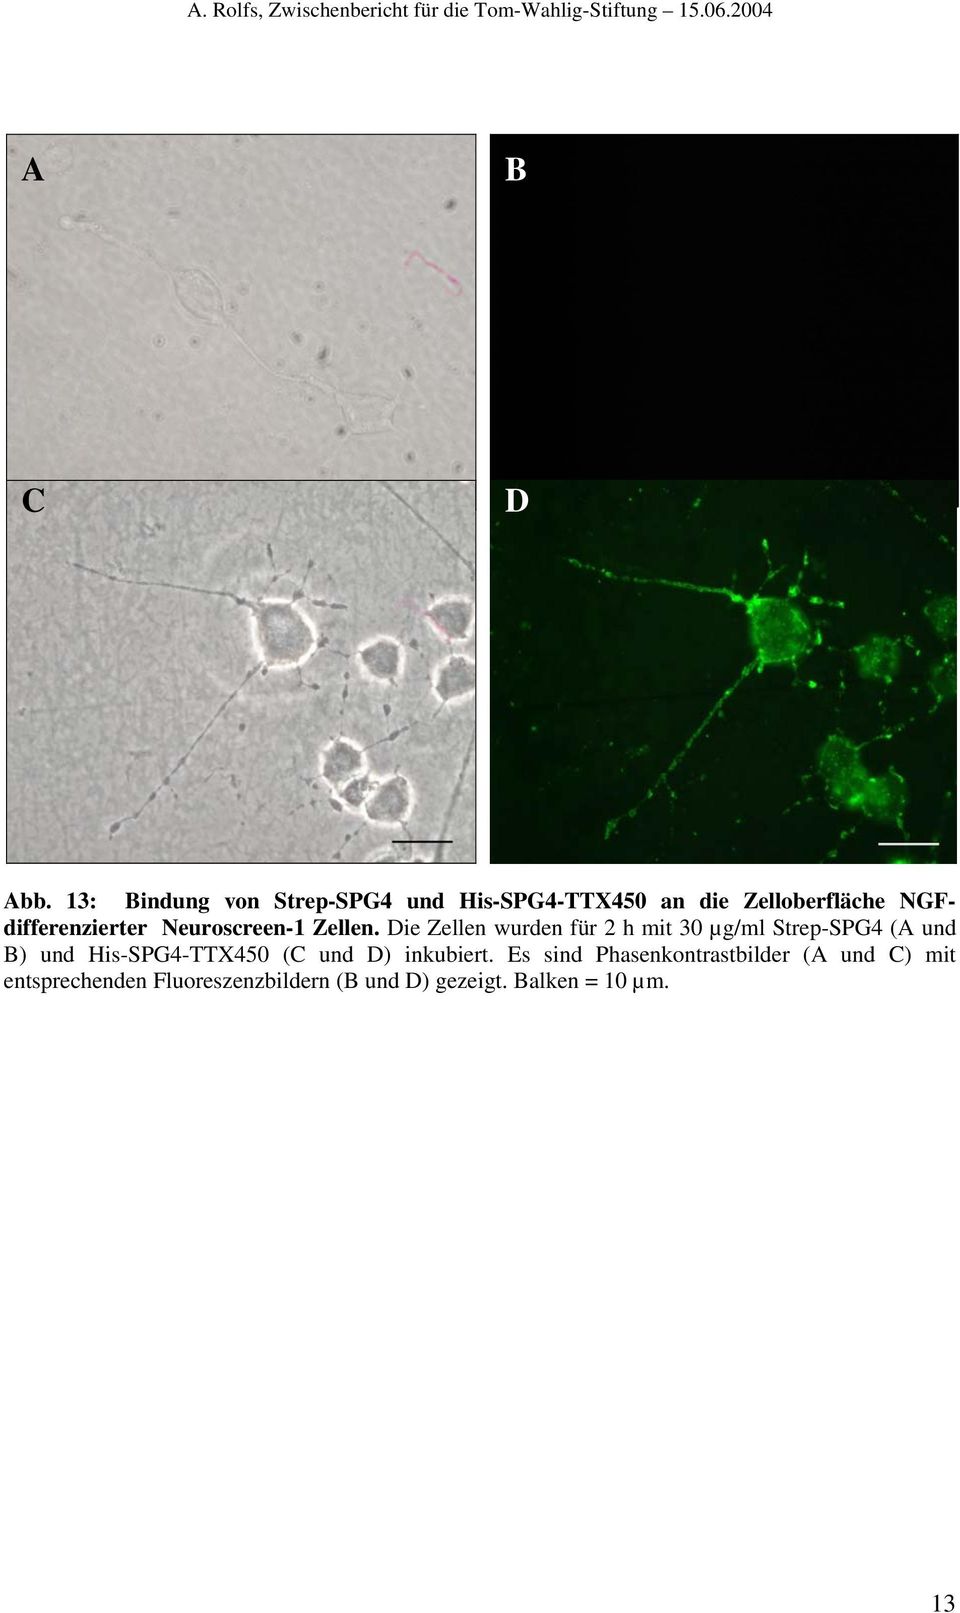 NGFdifferenzierter Neuroscreen-1 Zellen.